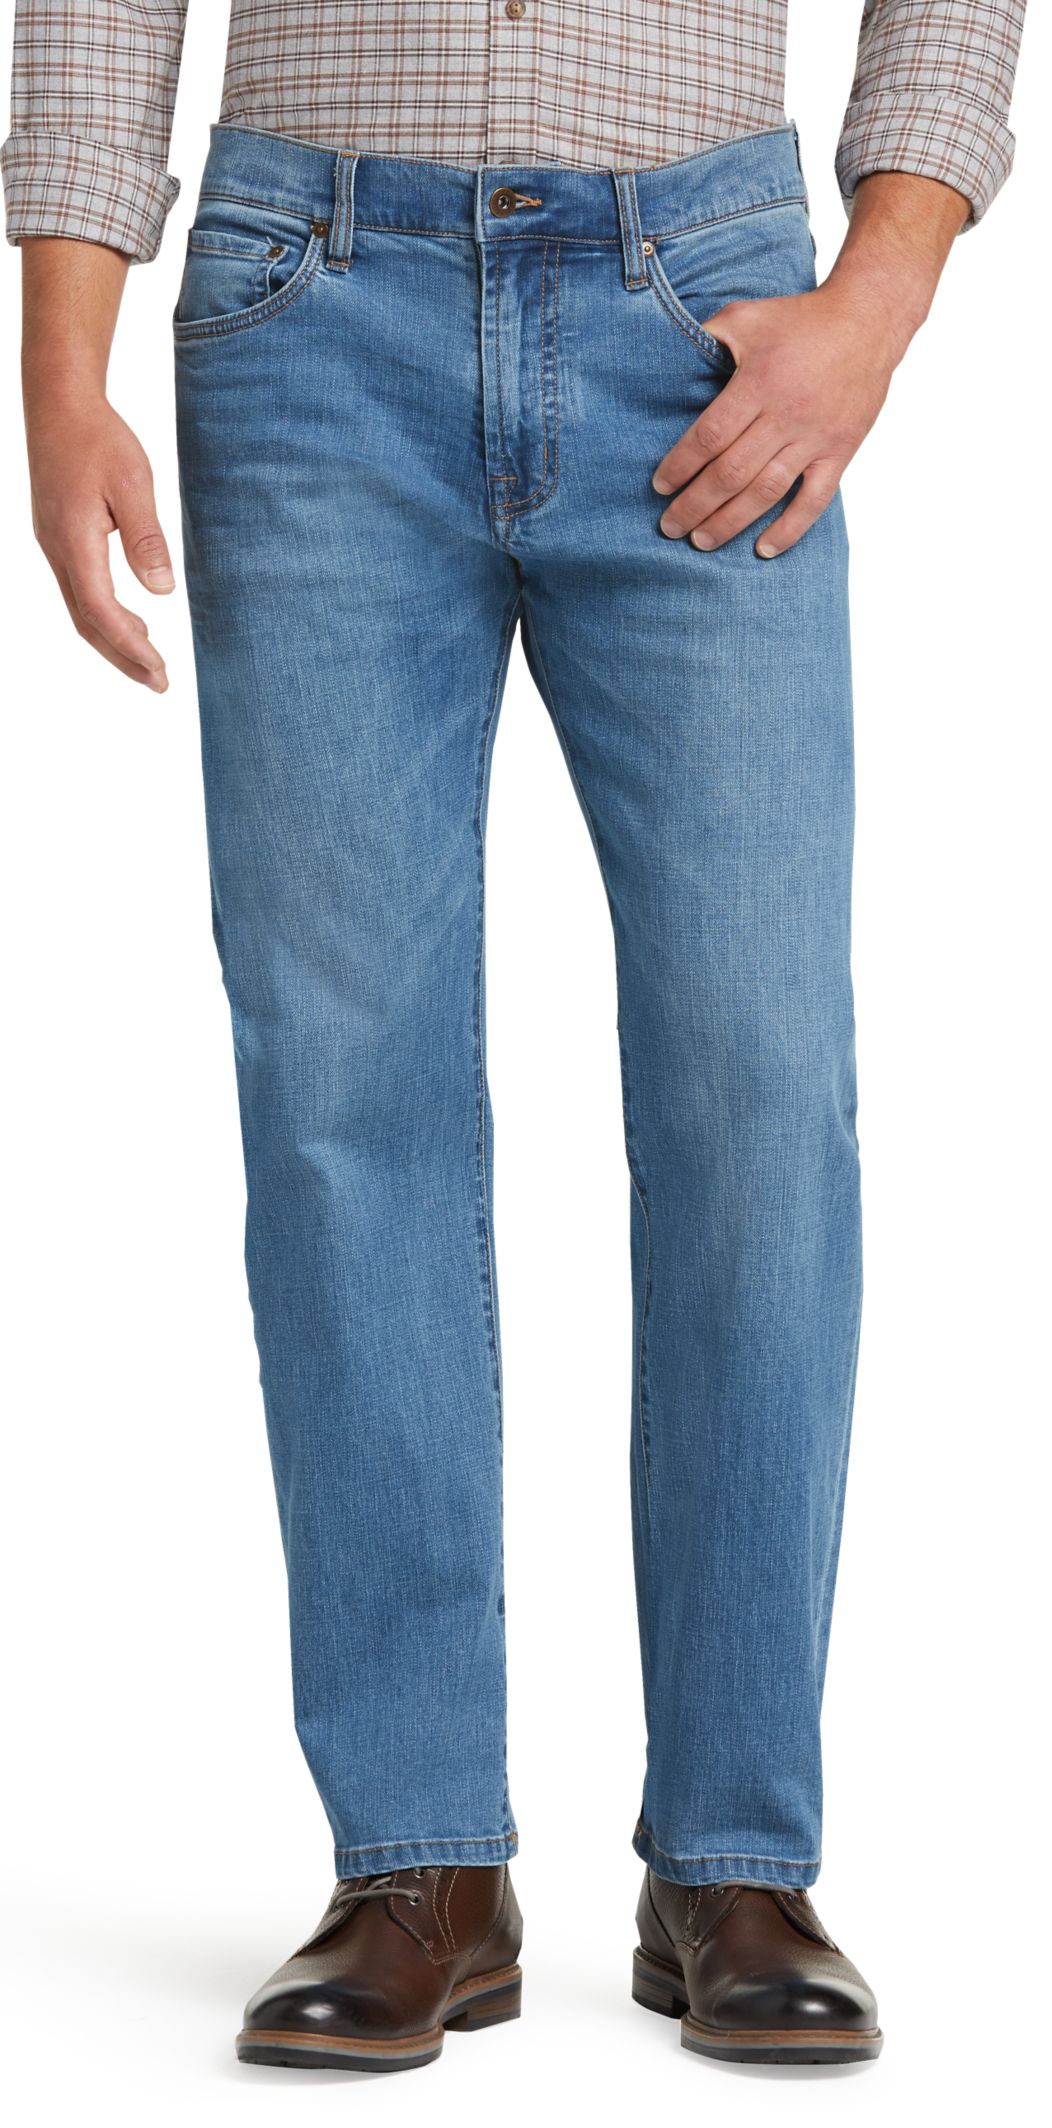 Jeans & Denim for Men | Men's FLYOUT_CATEGORY | JoS. A. Bank Clothiers